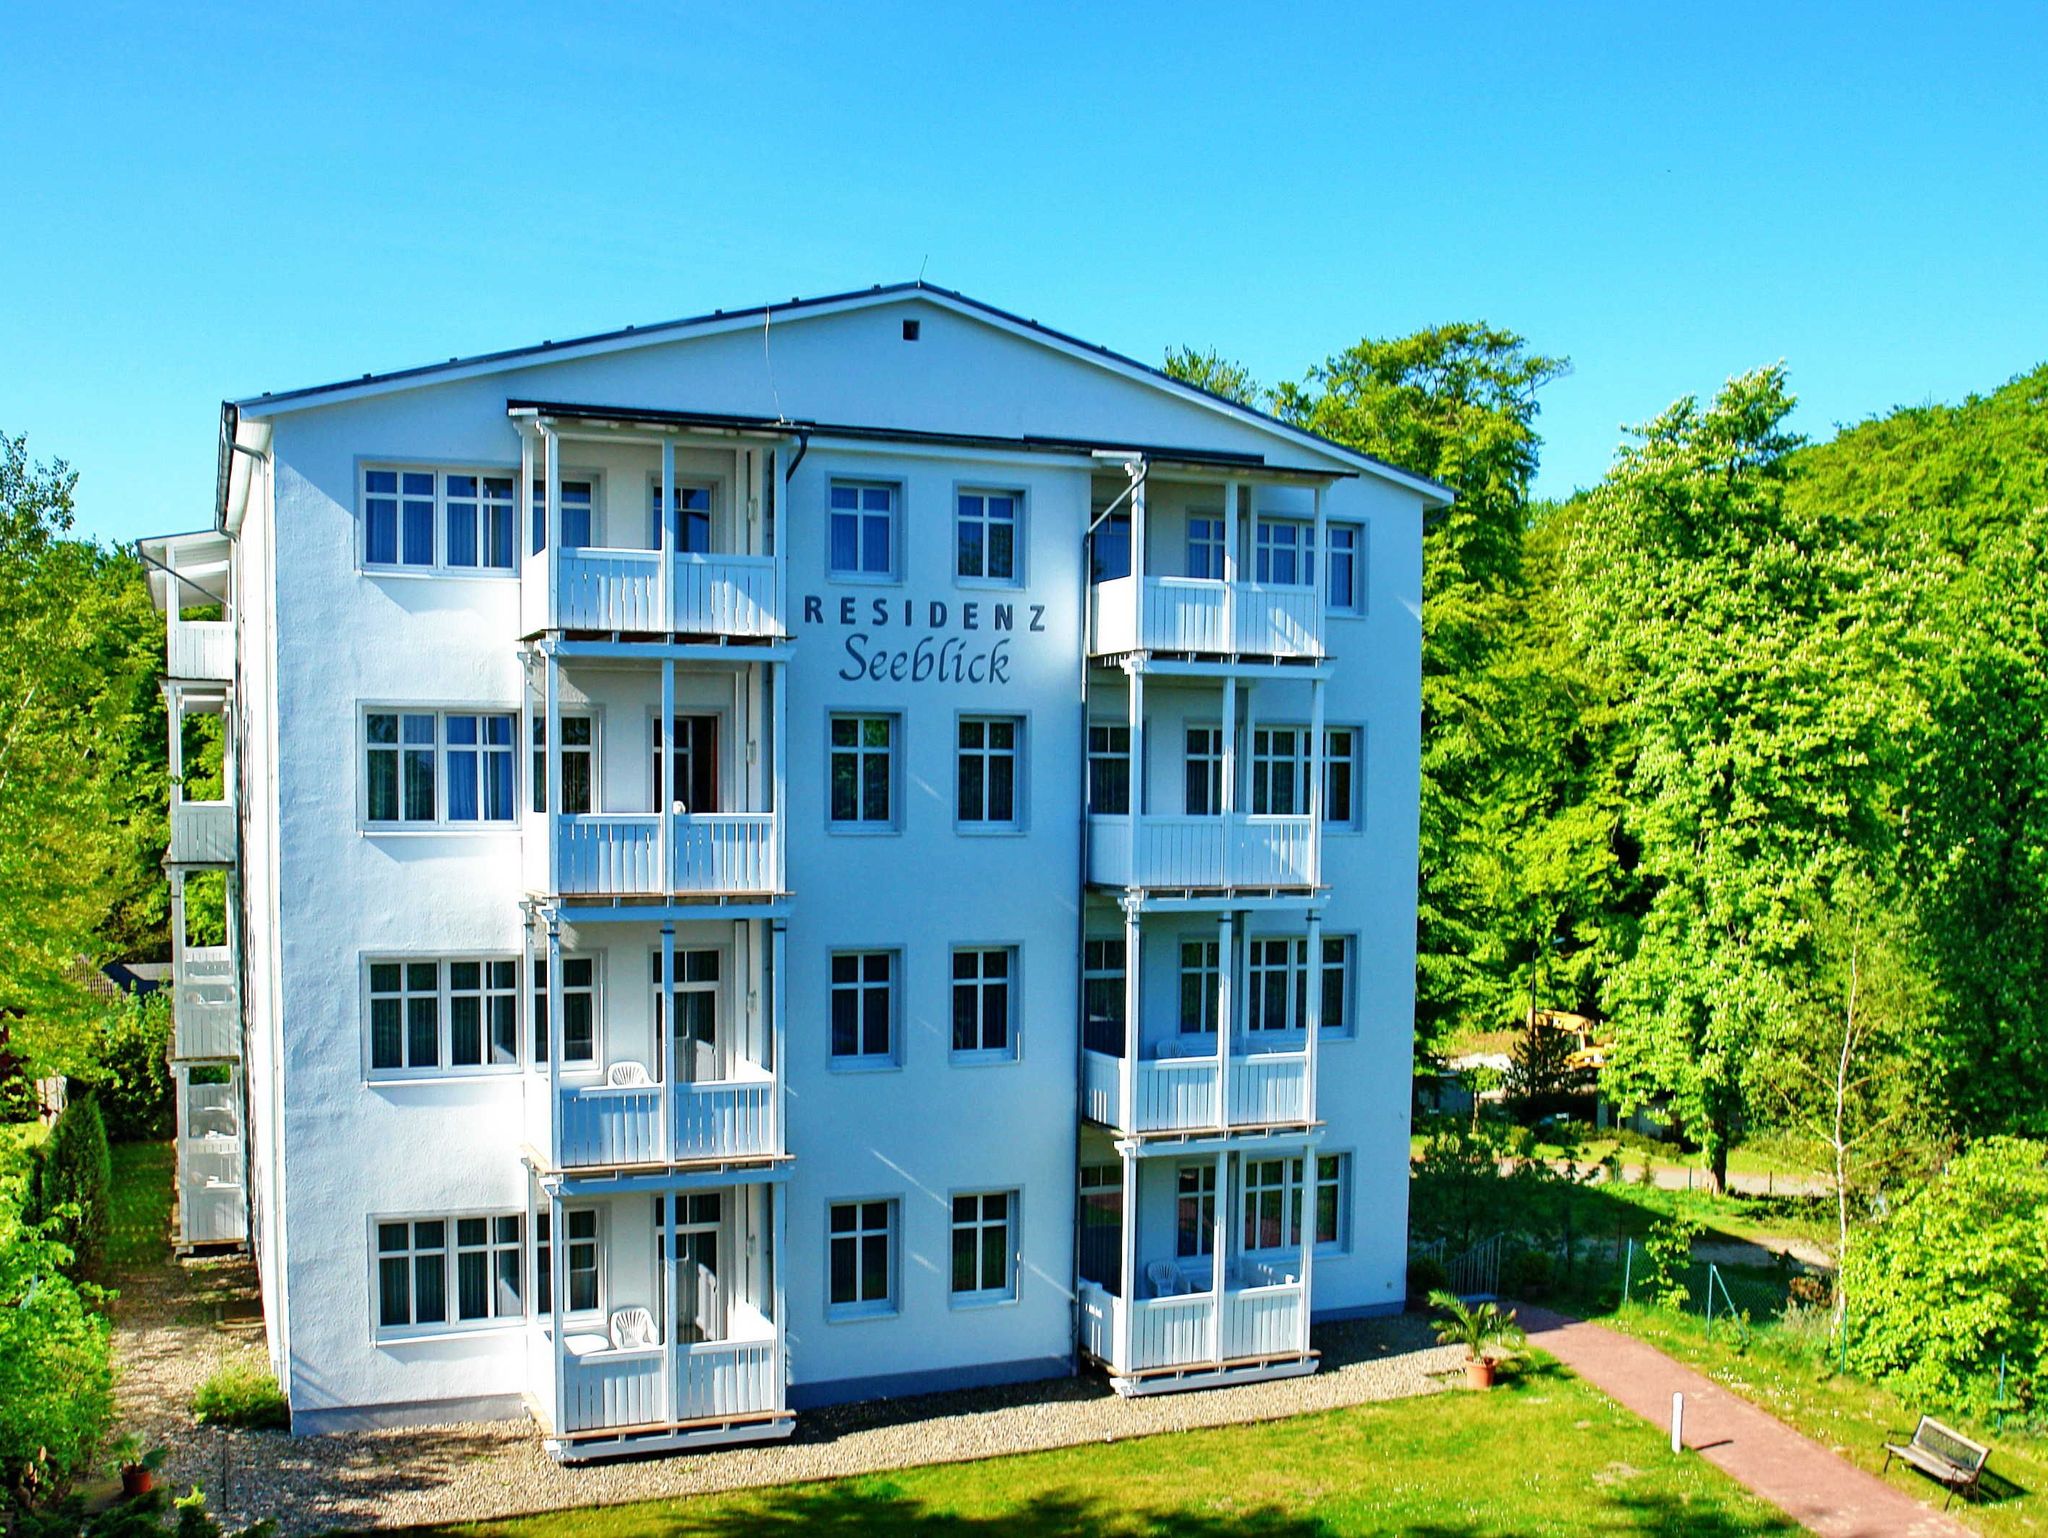 Ferienwohnung Villa Freia 13 im Ostseebad Binz, (ID 713)